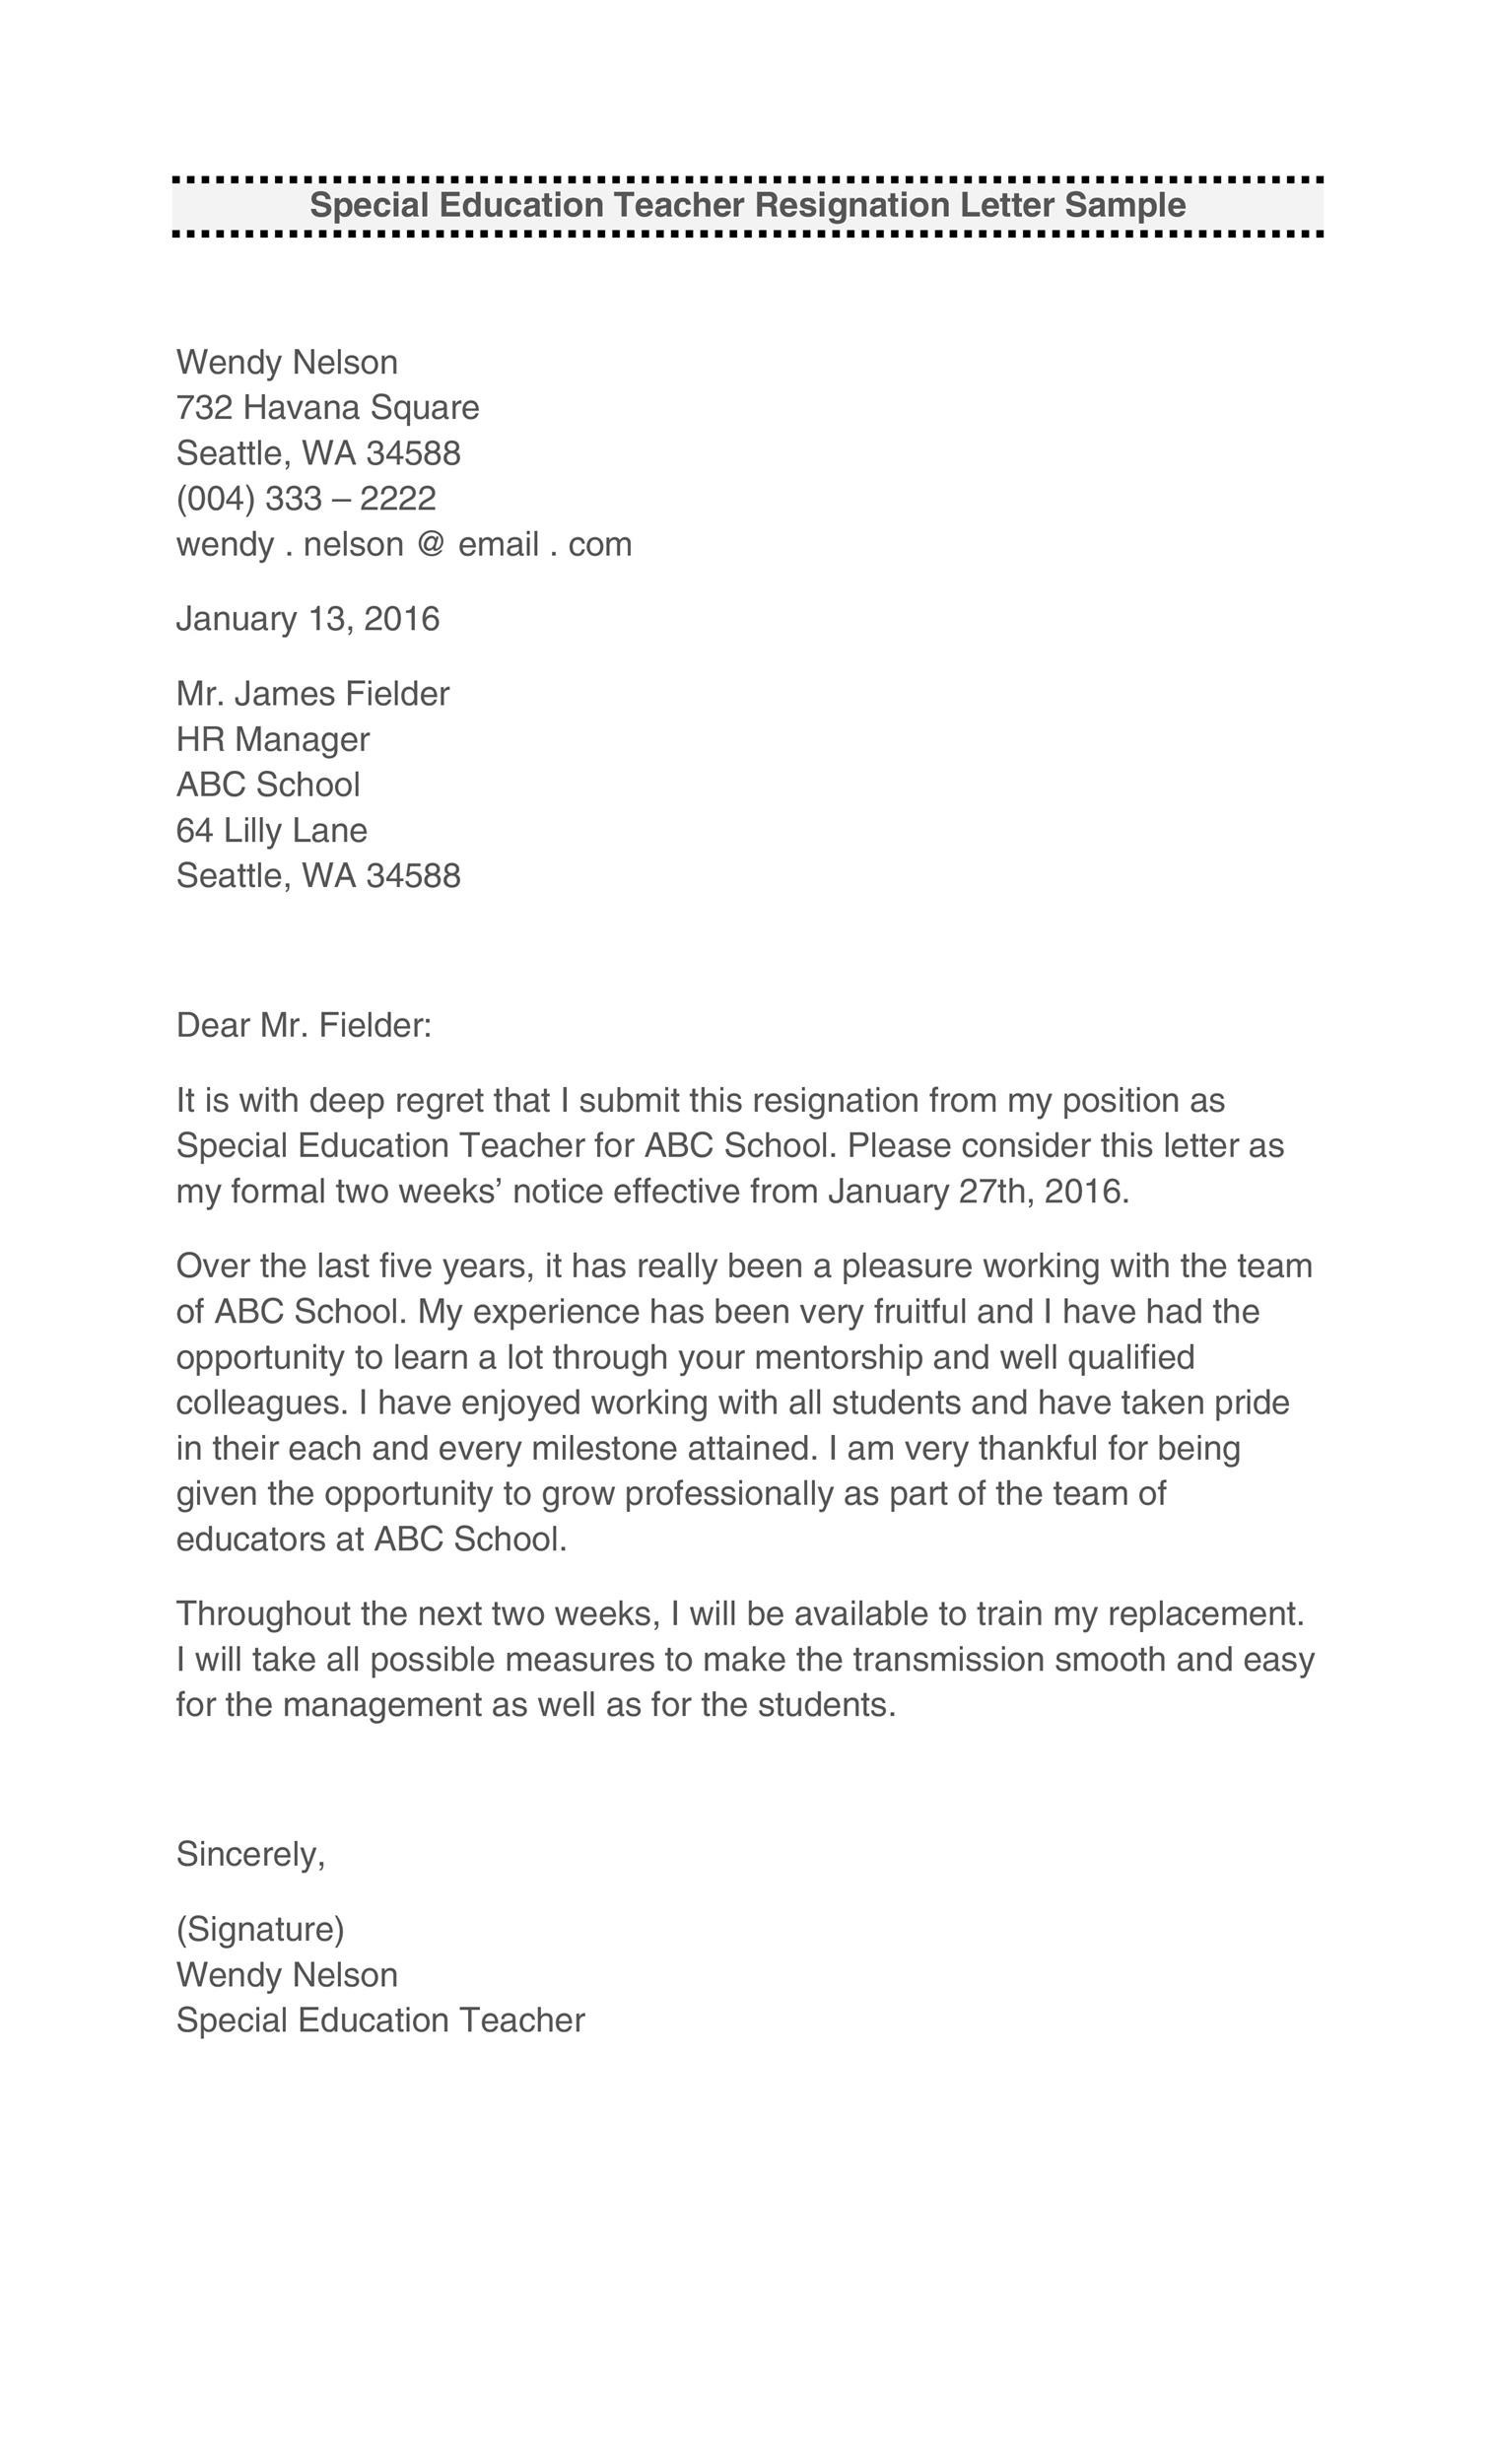 Free teacher resignation letter 22